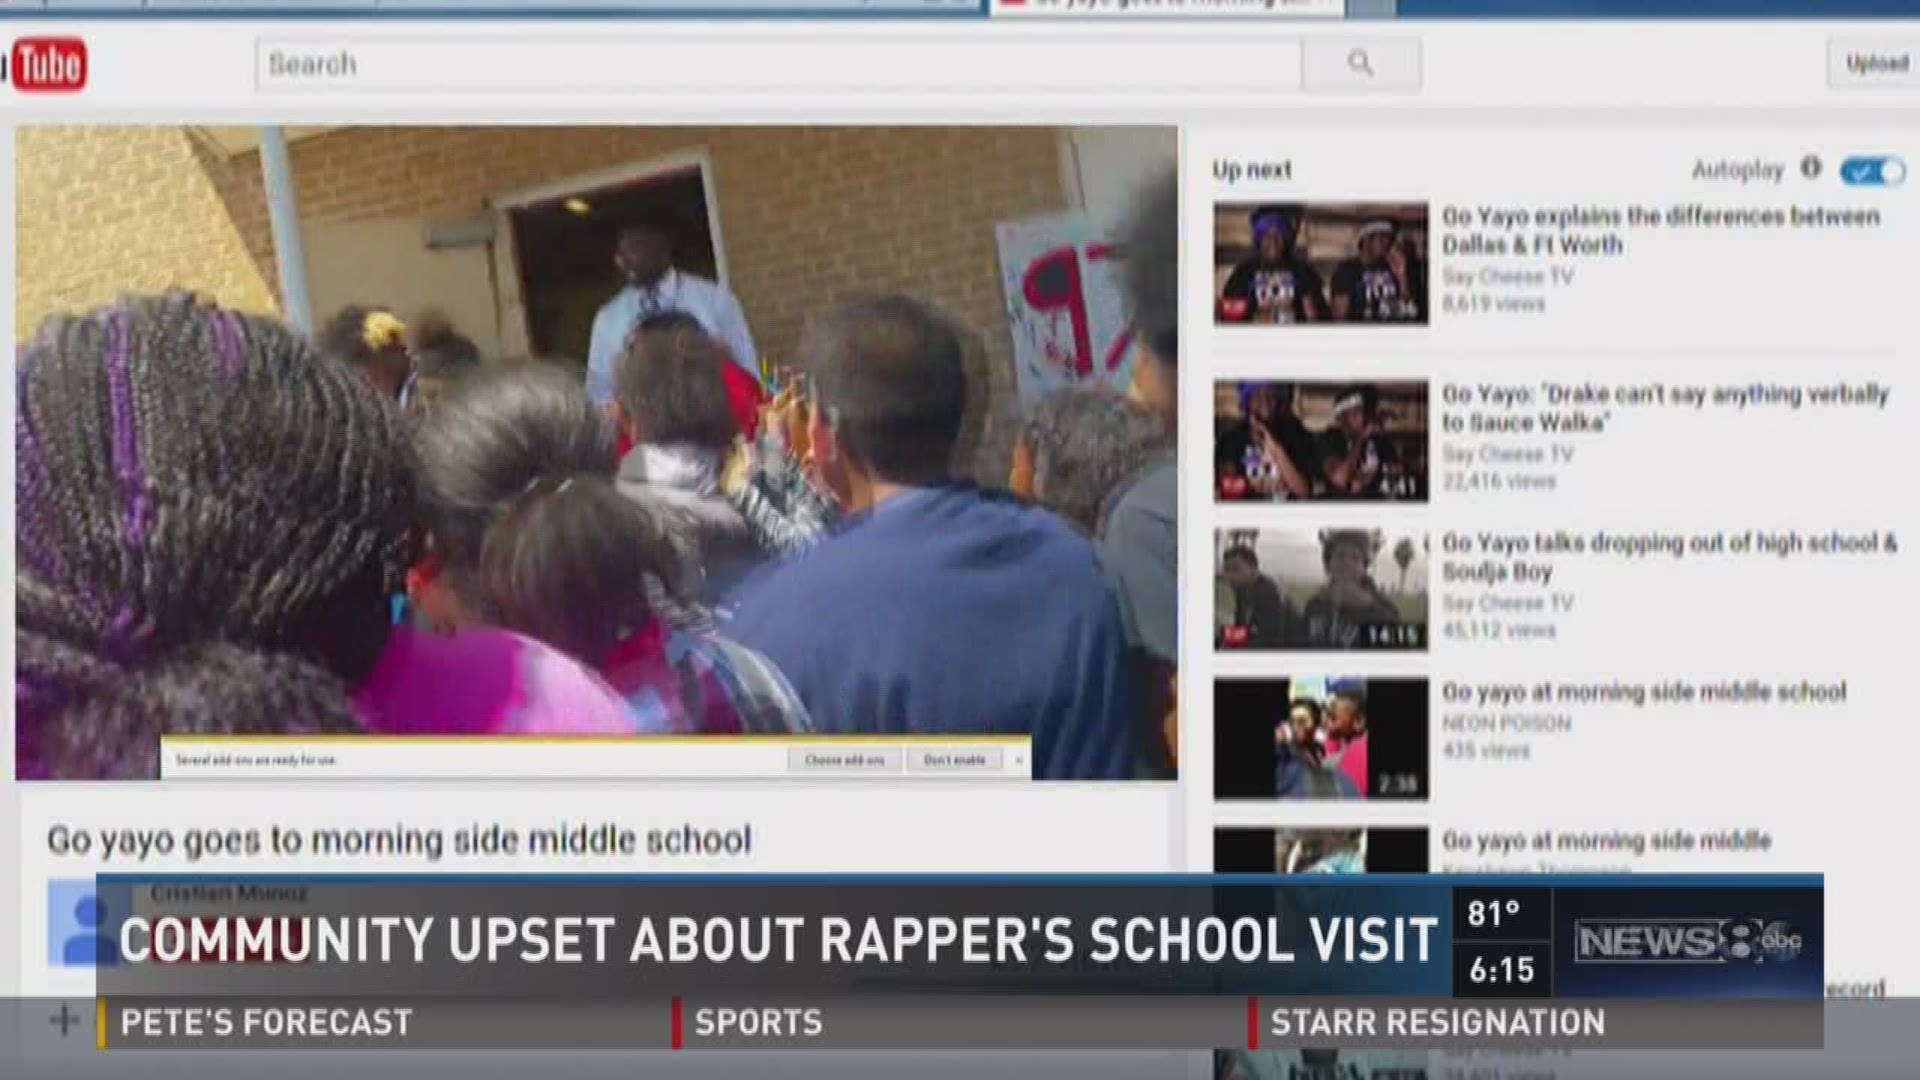 Community upset about rapper's school visit